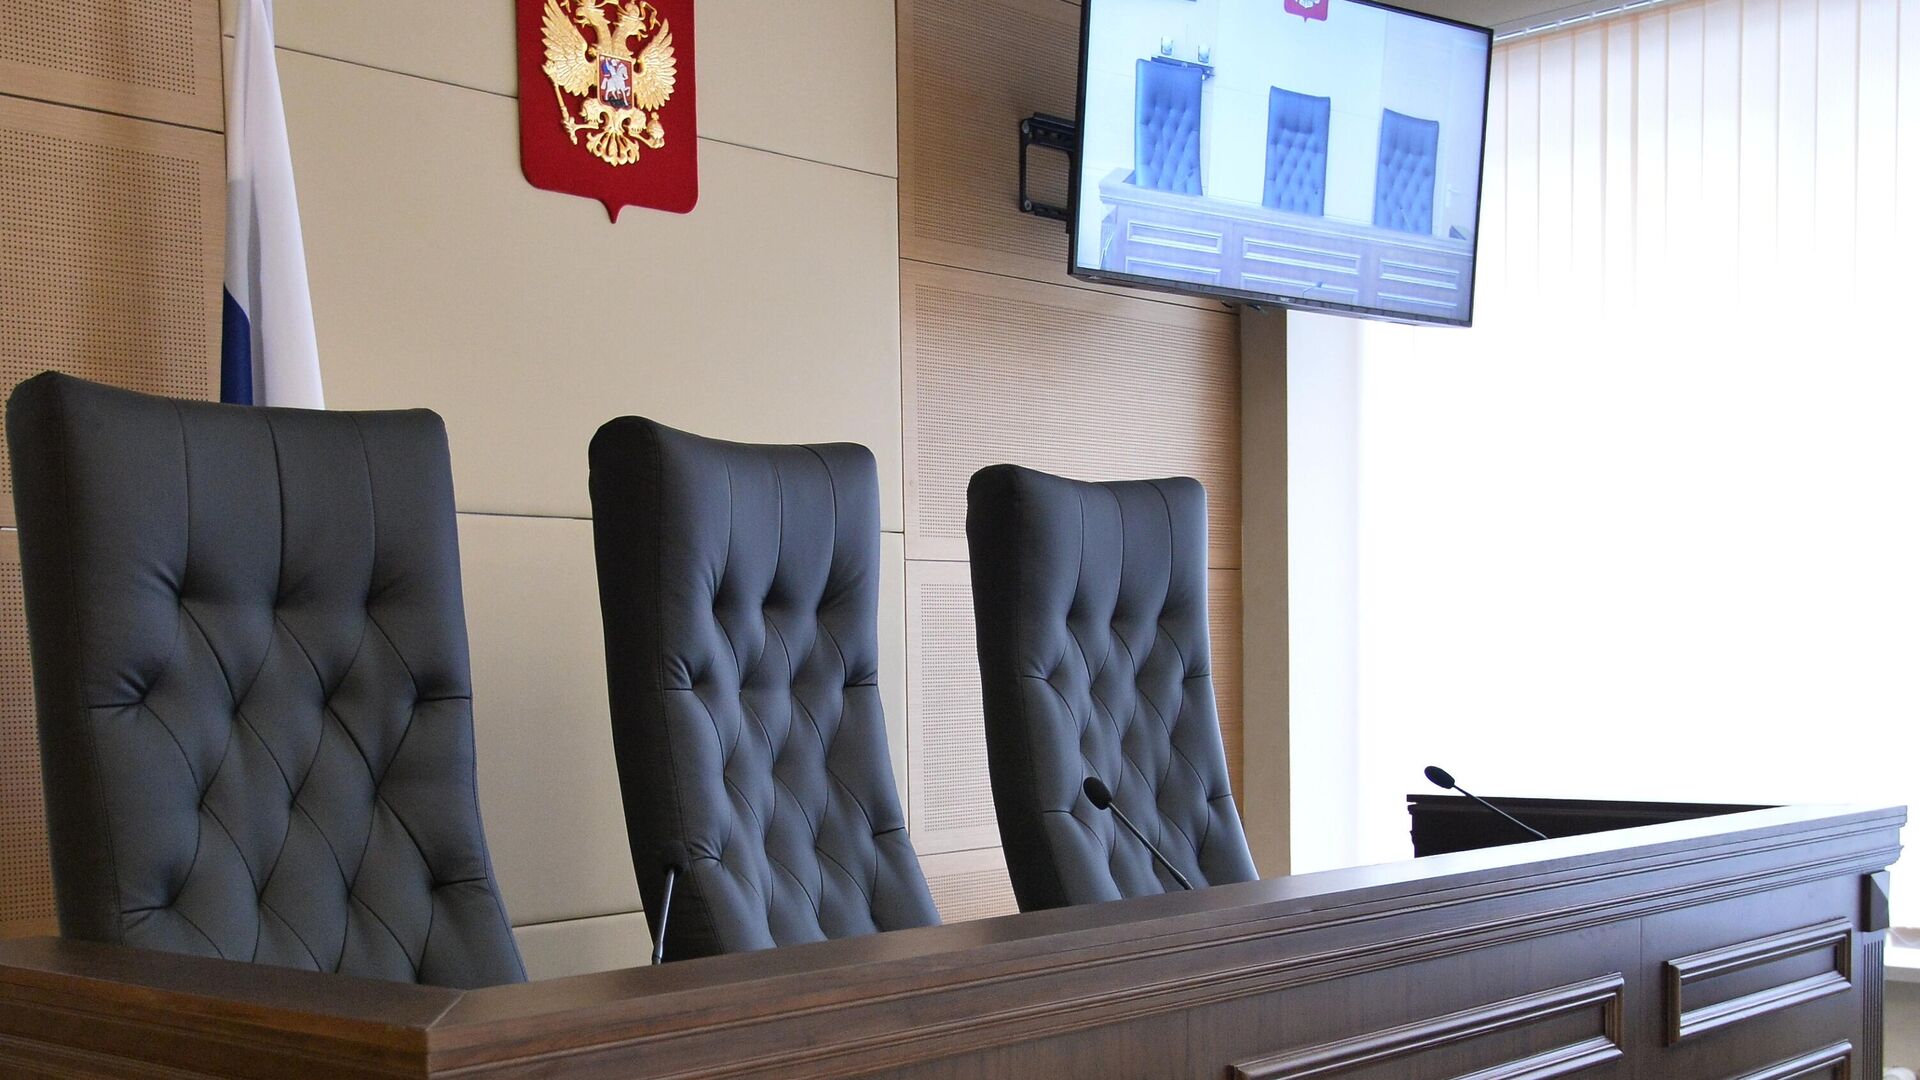 Кресла для судей в зале заседаний - РИА Новости, 1920, 27.08.2021